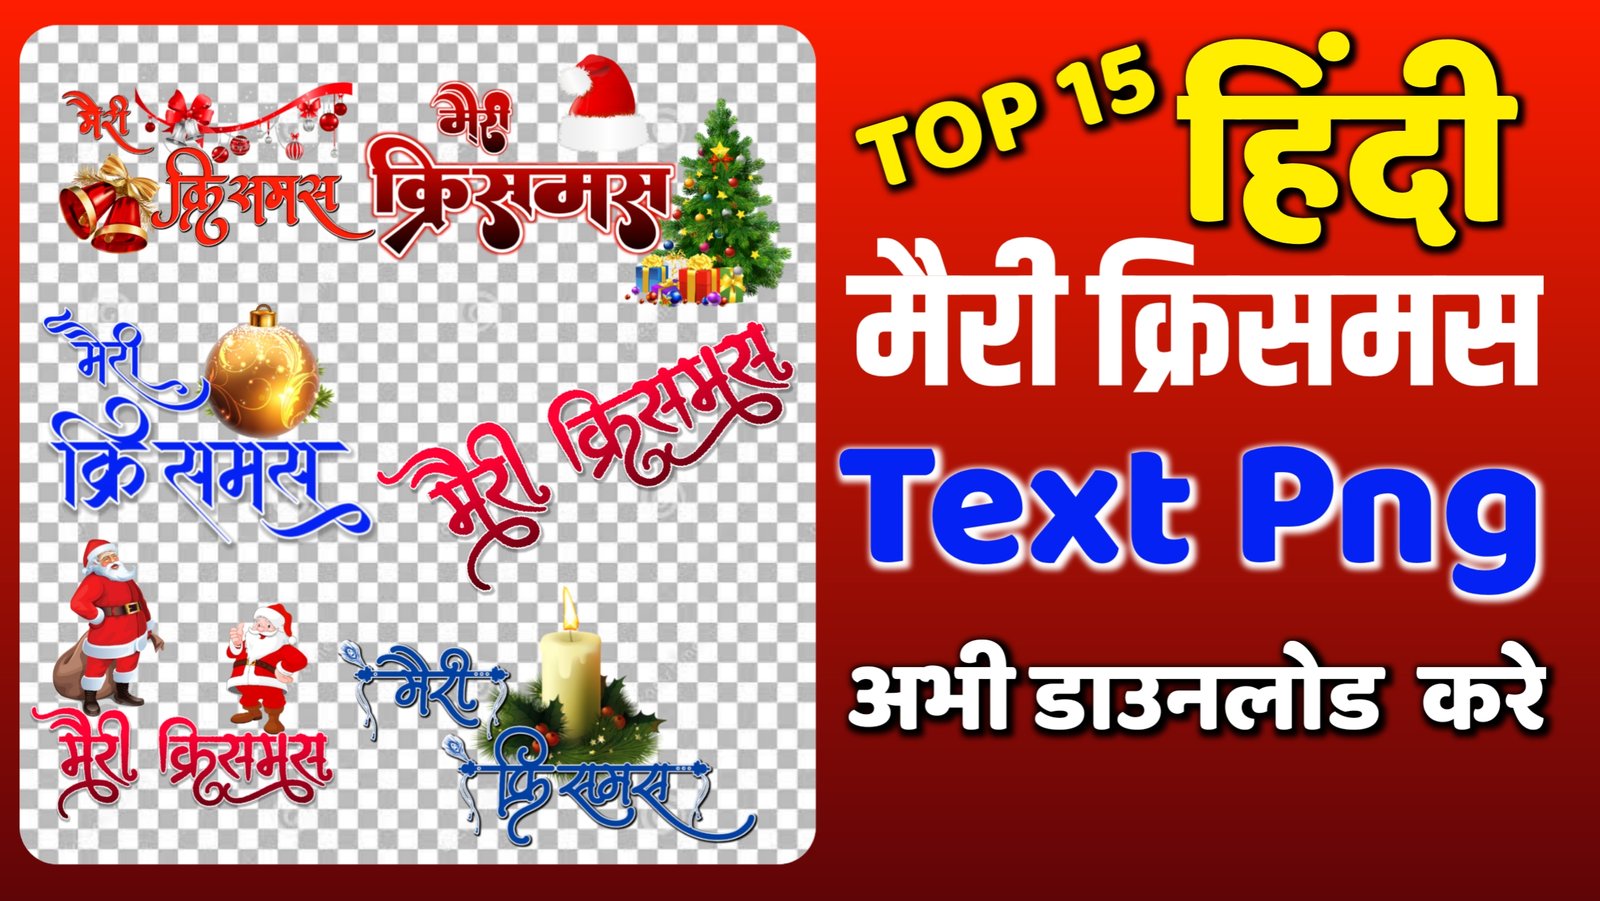 Merry Christmas hindi text PNG|merry Christmas Vector text png|merry Christmas 2023 PNG images|merry Christmas calligraphy text PNG| merry Christmas 25 dec PNG| stylish merry Christmas text PNG|